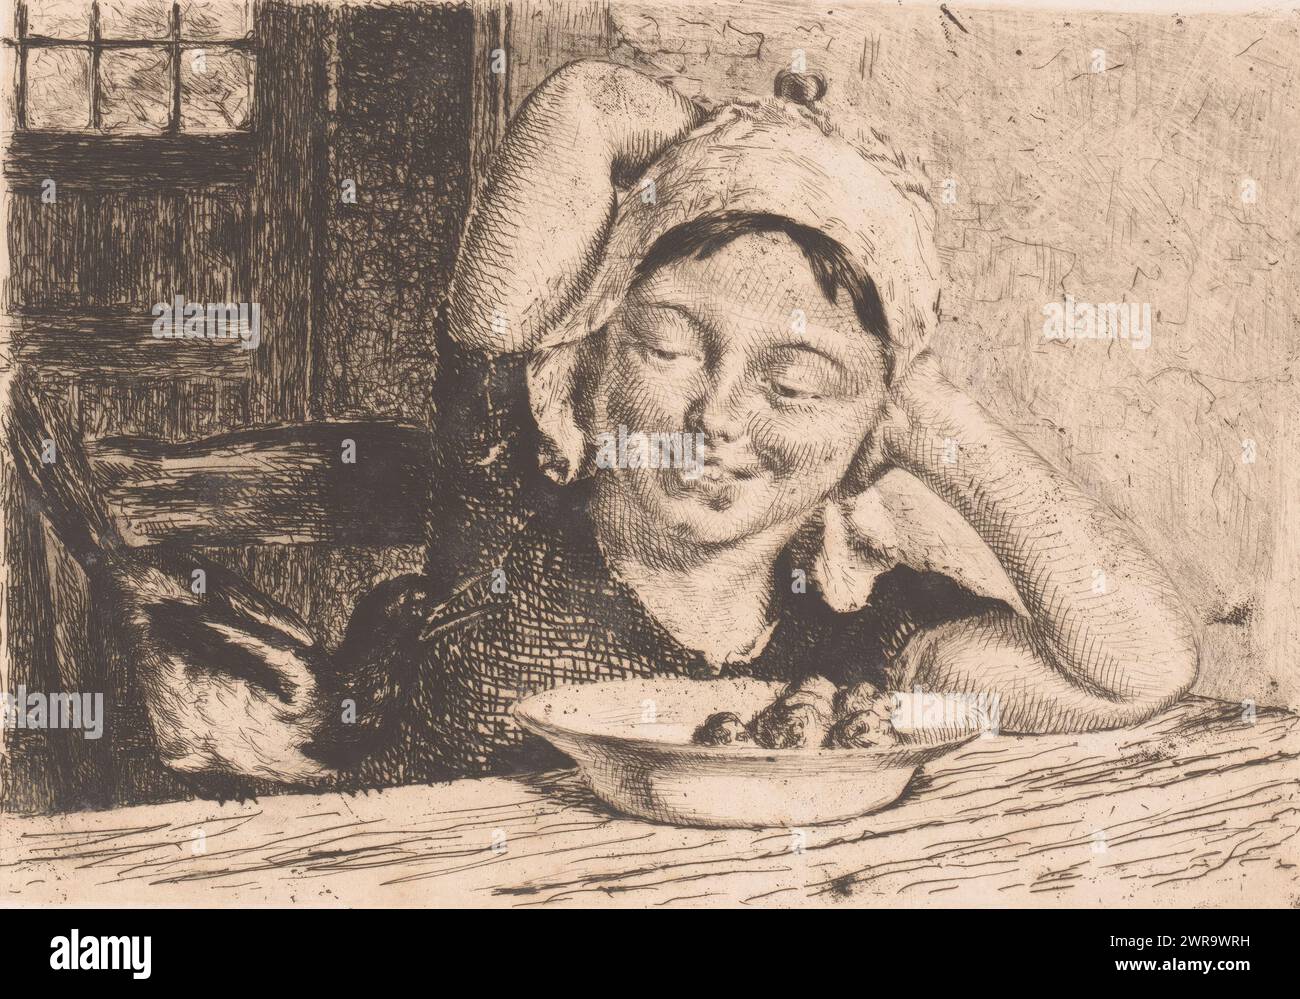 Ragazza a un tavolo con un piatto di cibo e un magpie, tipografo: Edgard Farasyn, (firmato dall'artista), 1868 - 1910, carta, incisione, altezza 155 mm x larghezza 240 mm, stampa Foto Stock